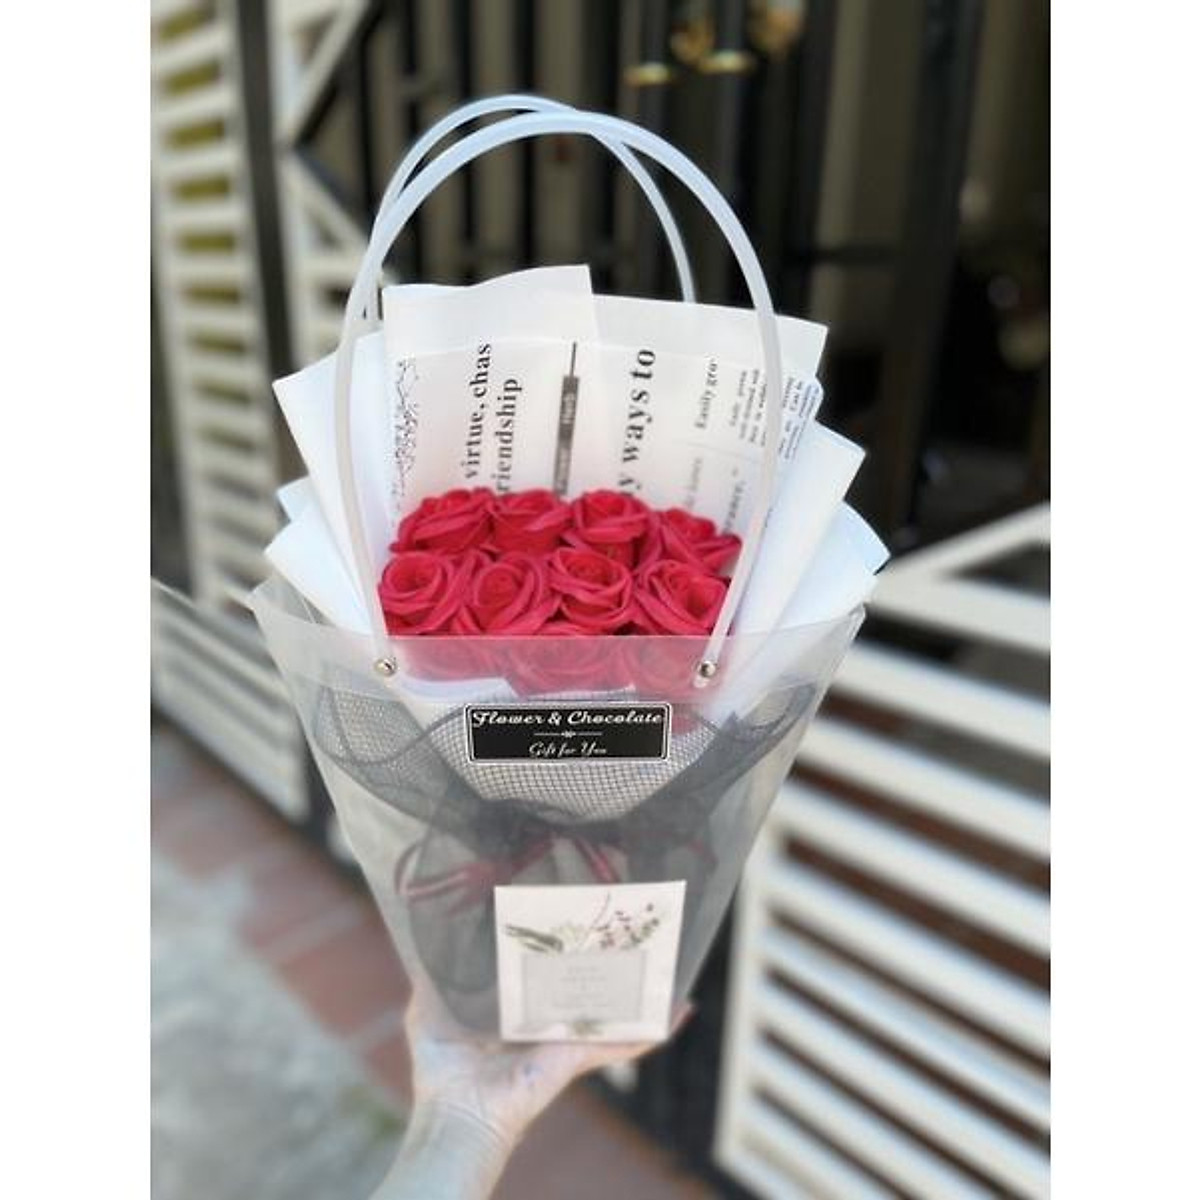 Bó hoa 11 đỏ mix báo chữ giấy trắng kèm túi thiệp - Hộp quà - Túi quà